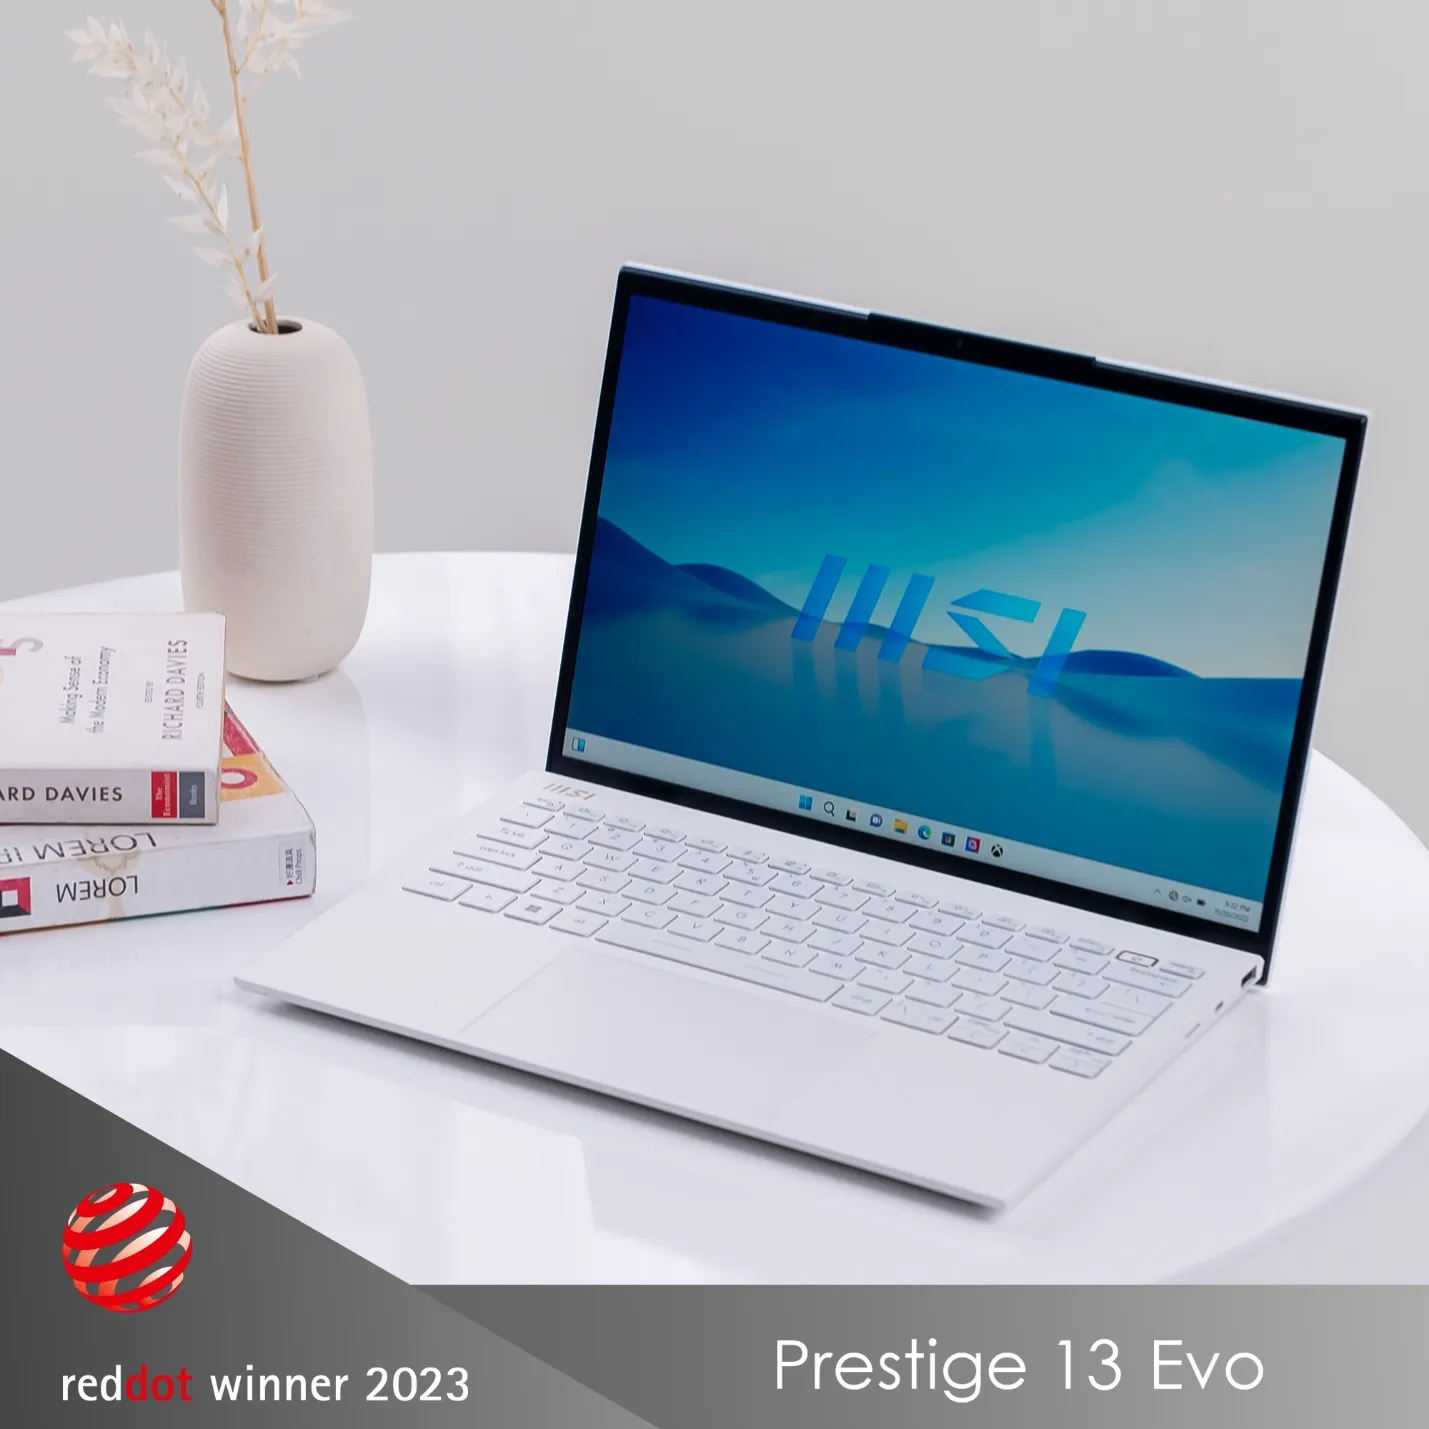 Các mẫu laptop MSI giành giải thưởng thiết kế Red Dot 2023